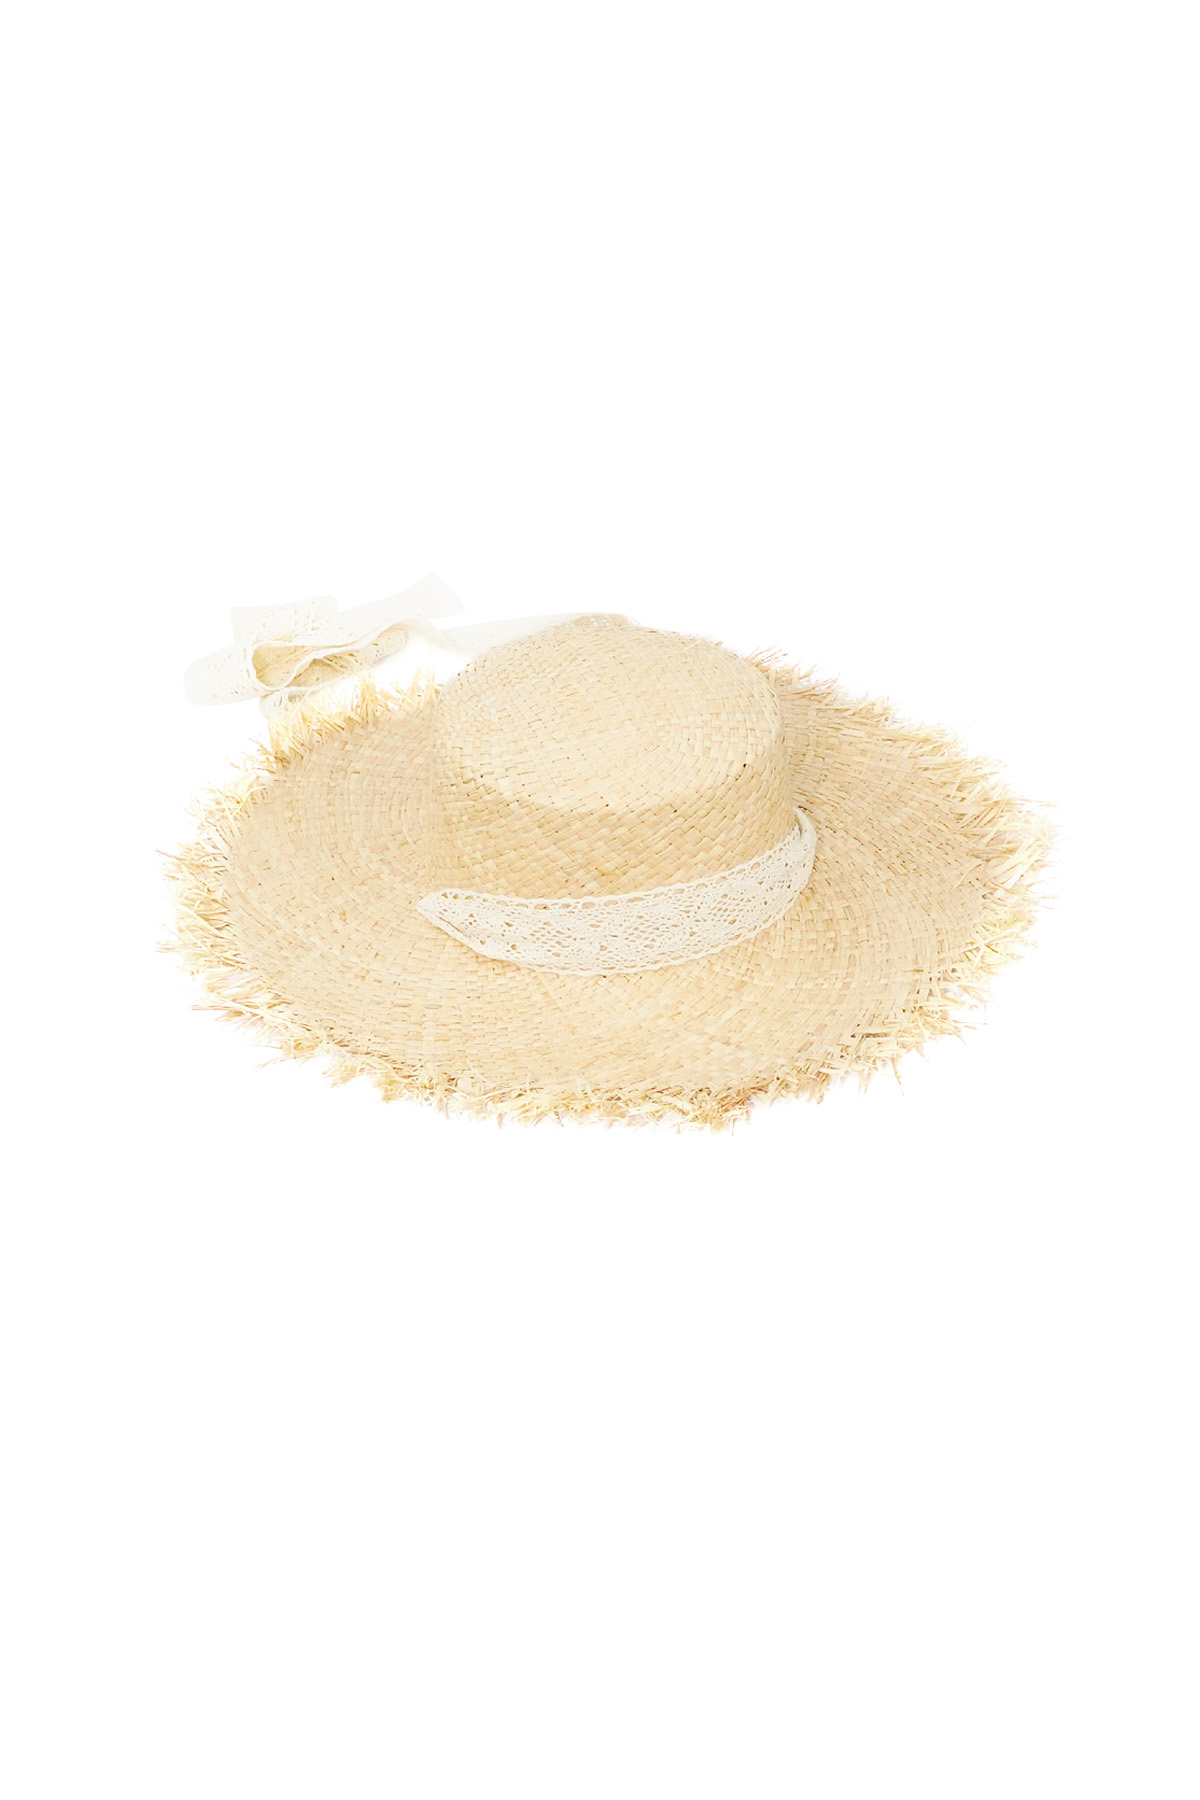 Plaj havası şapkası - kirli beyaz h5 